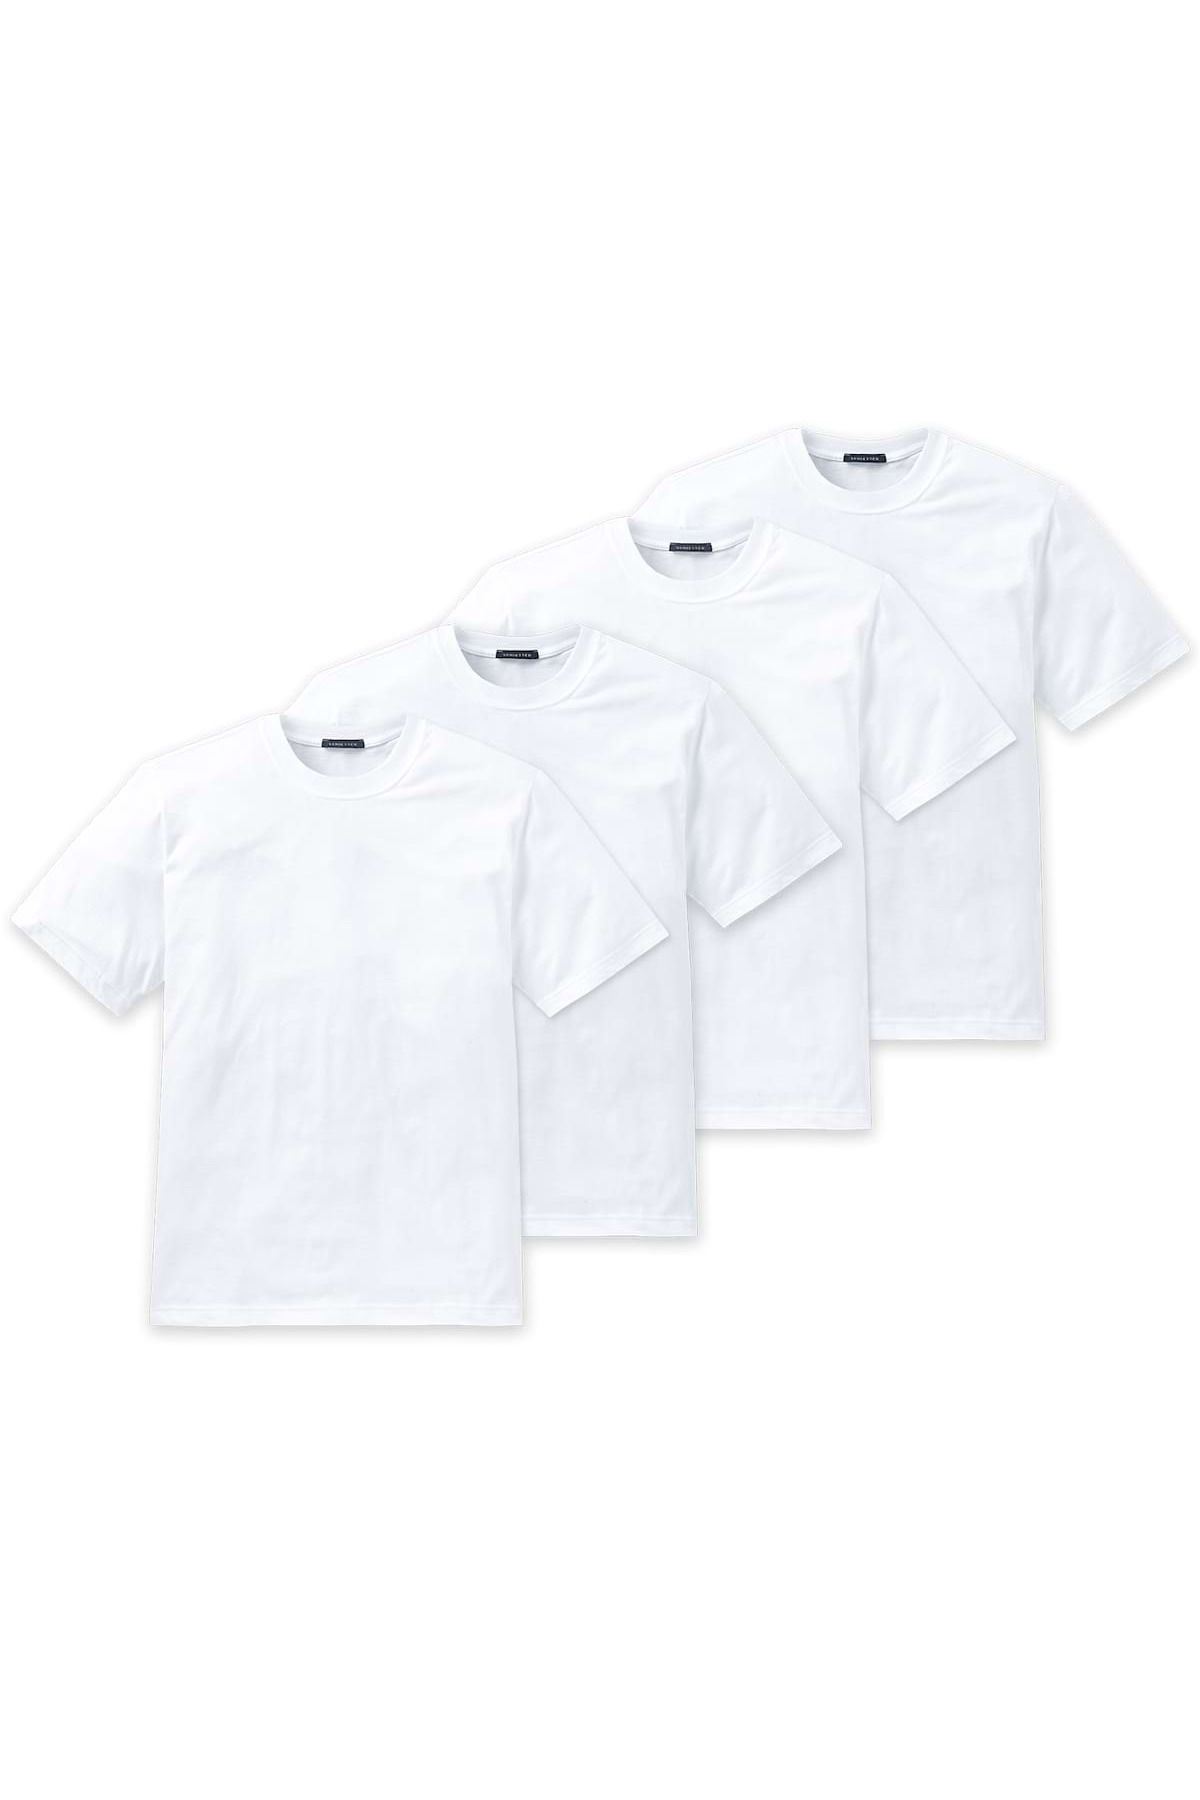 Schiesser Herren American T-Shirt 4er Pack - 1/2 Arm, Unterhemd, Rundhals -  Trendyol